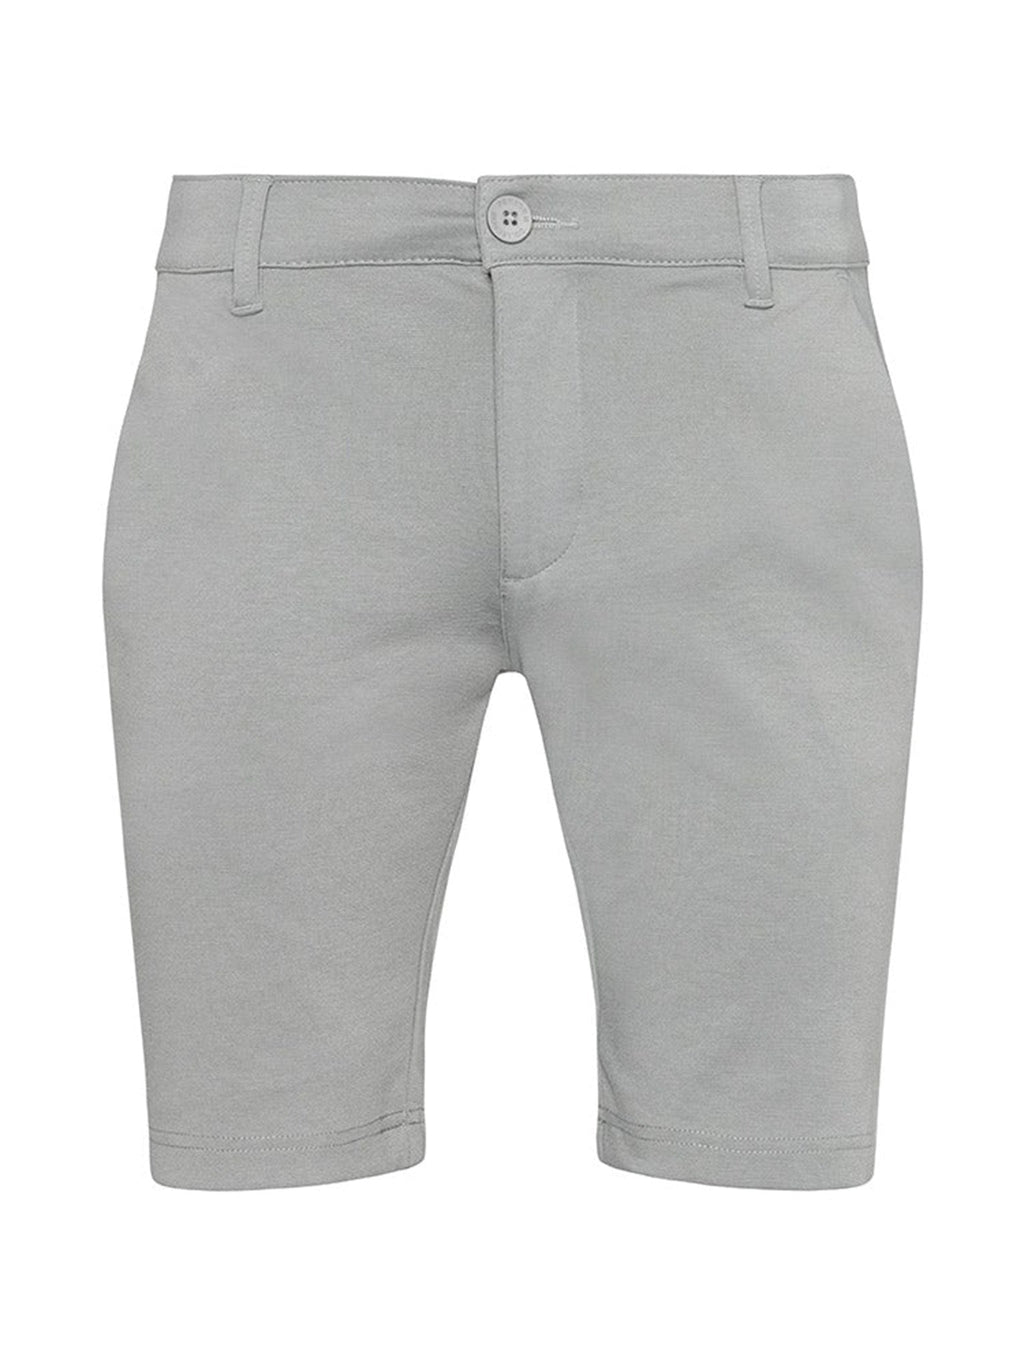 Pantaloncini per prestazioni - grigio chiaro